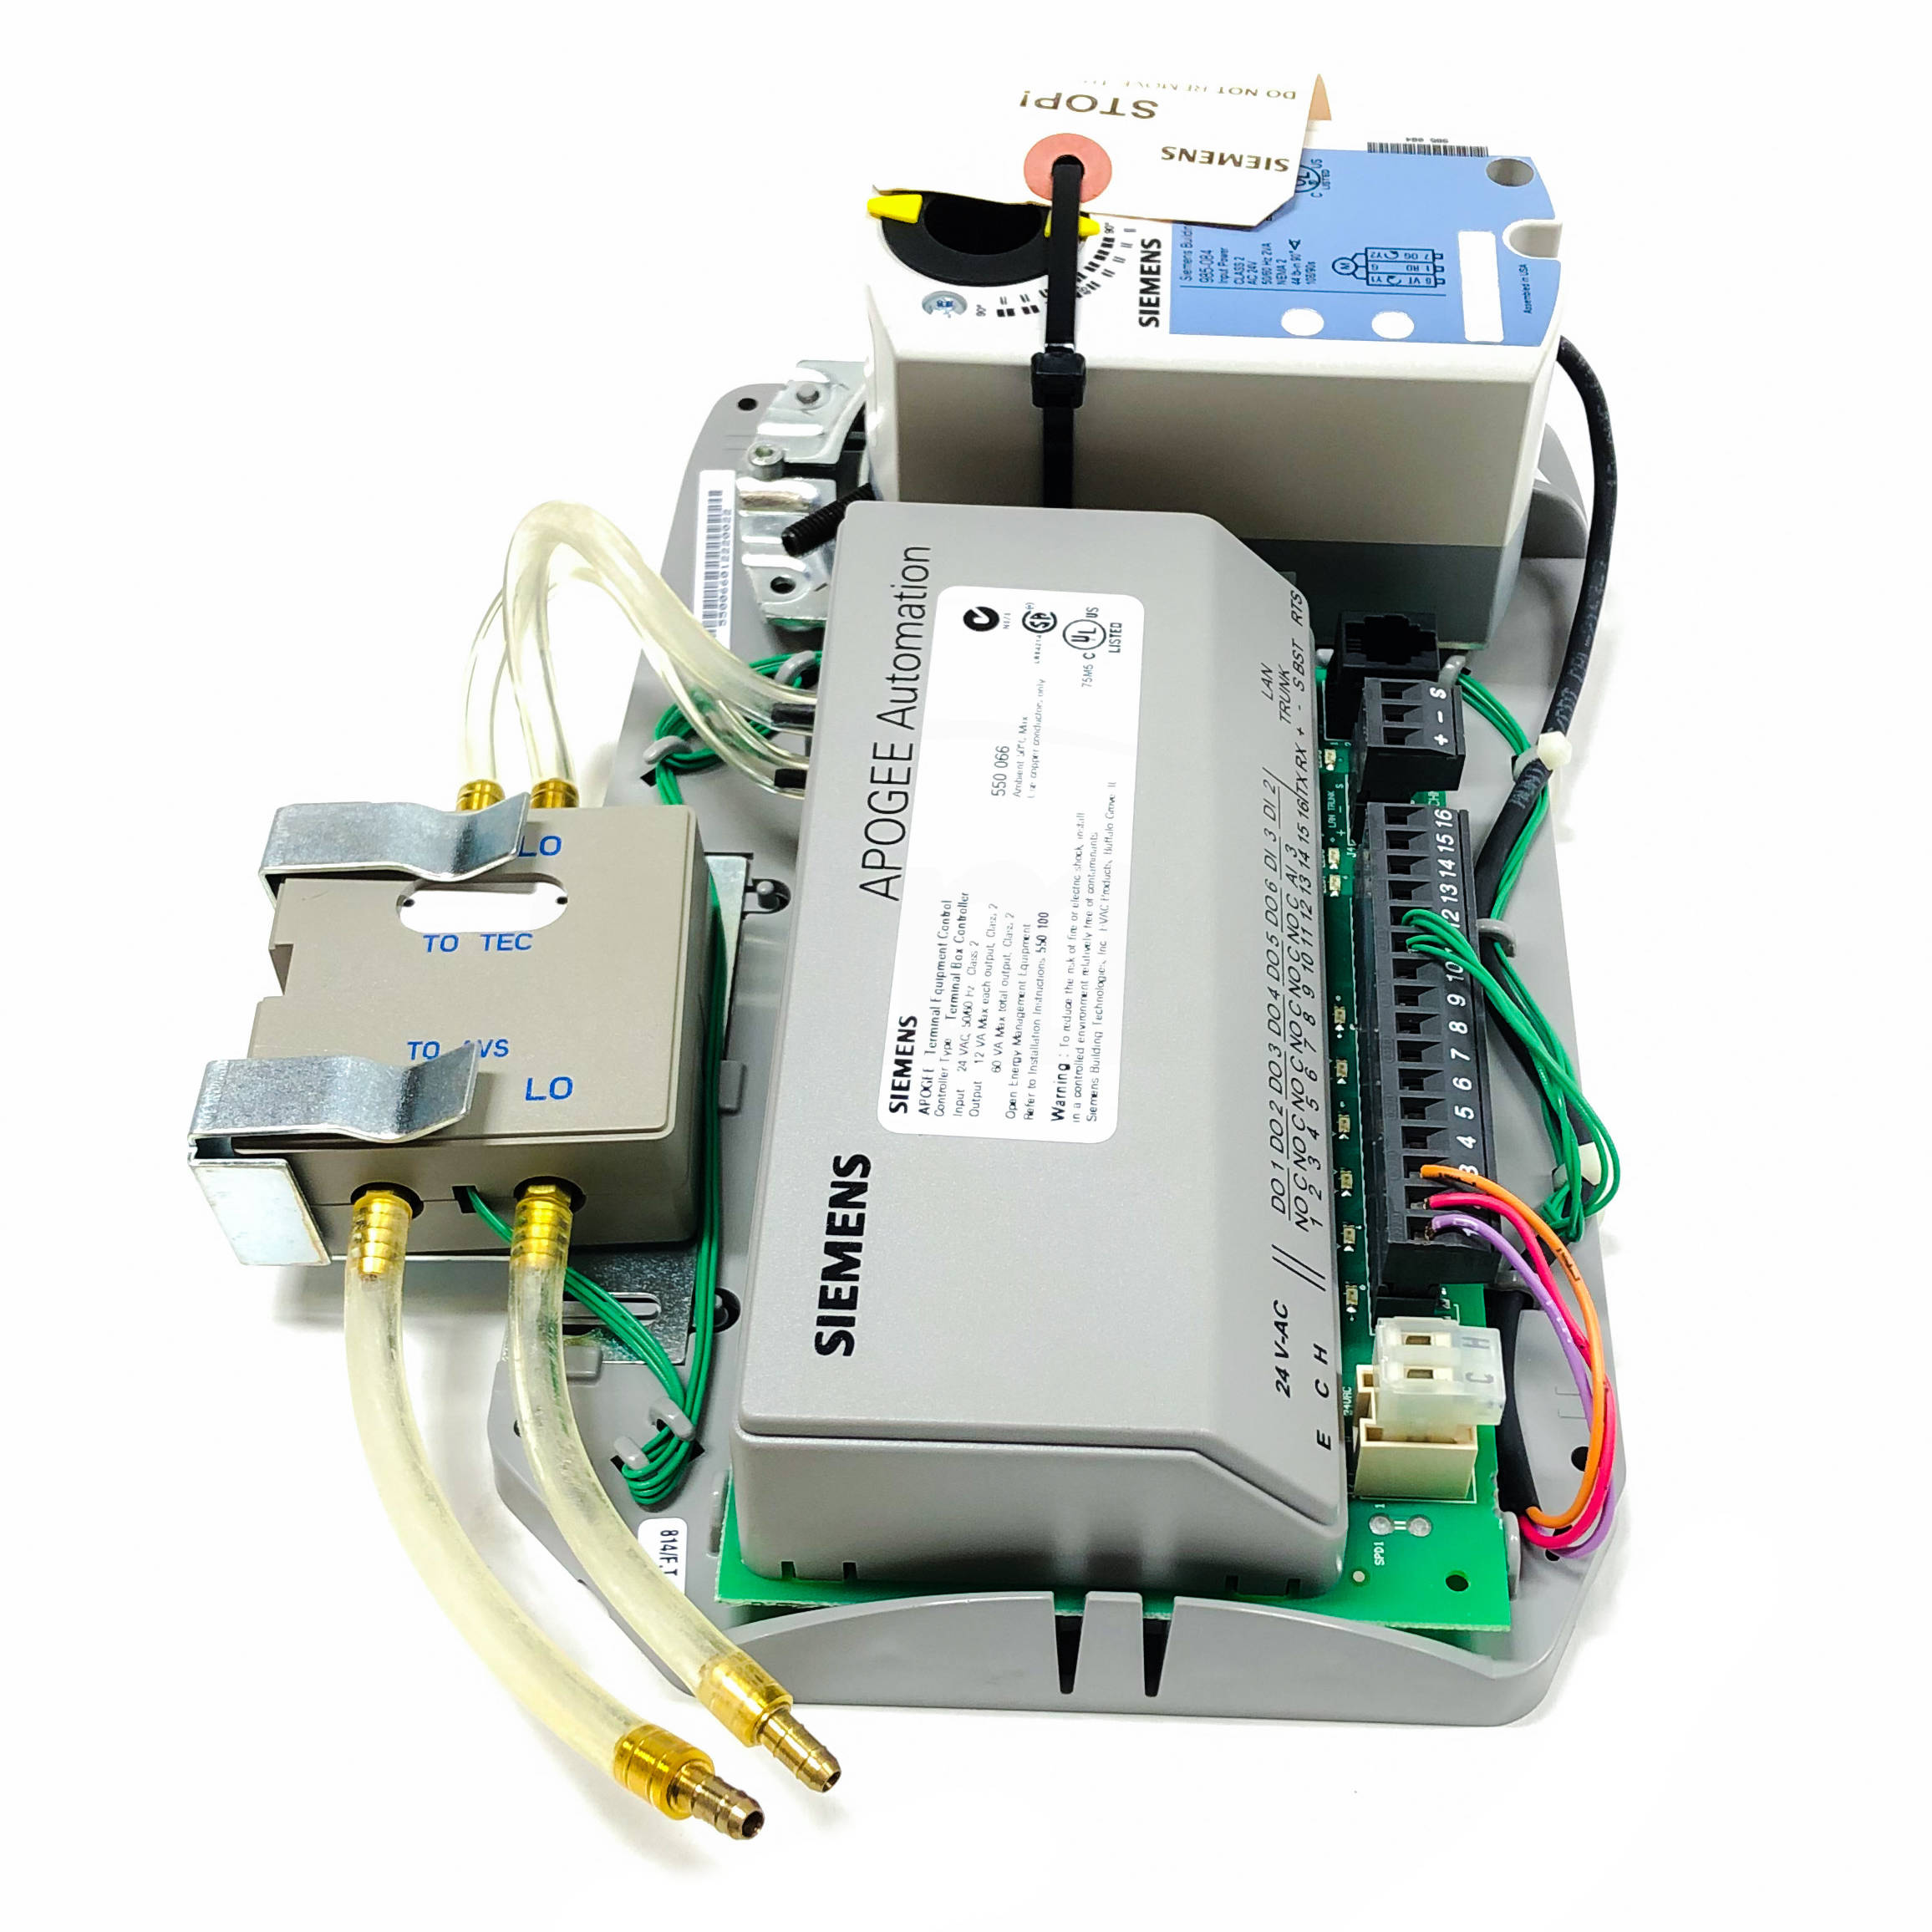 550066 Siemens TEC Actuator Package